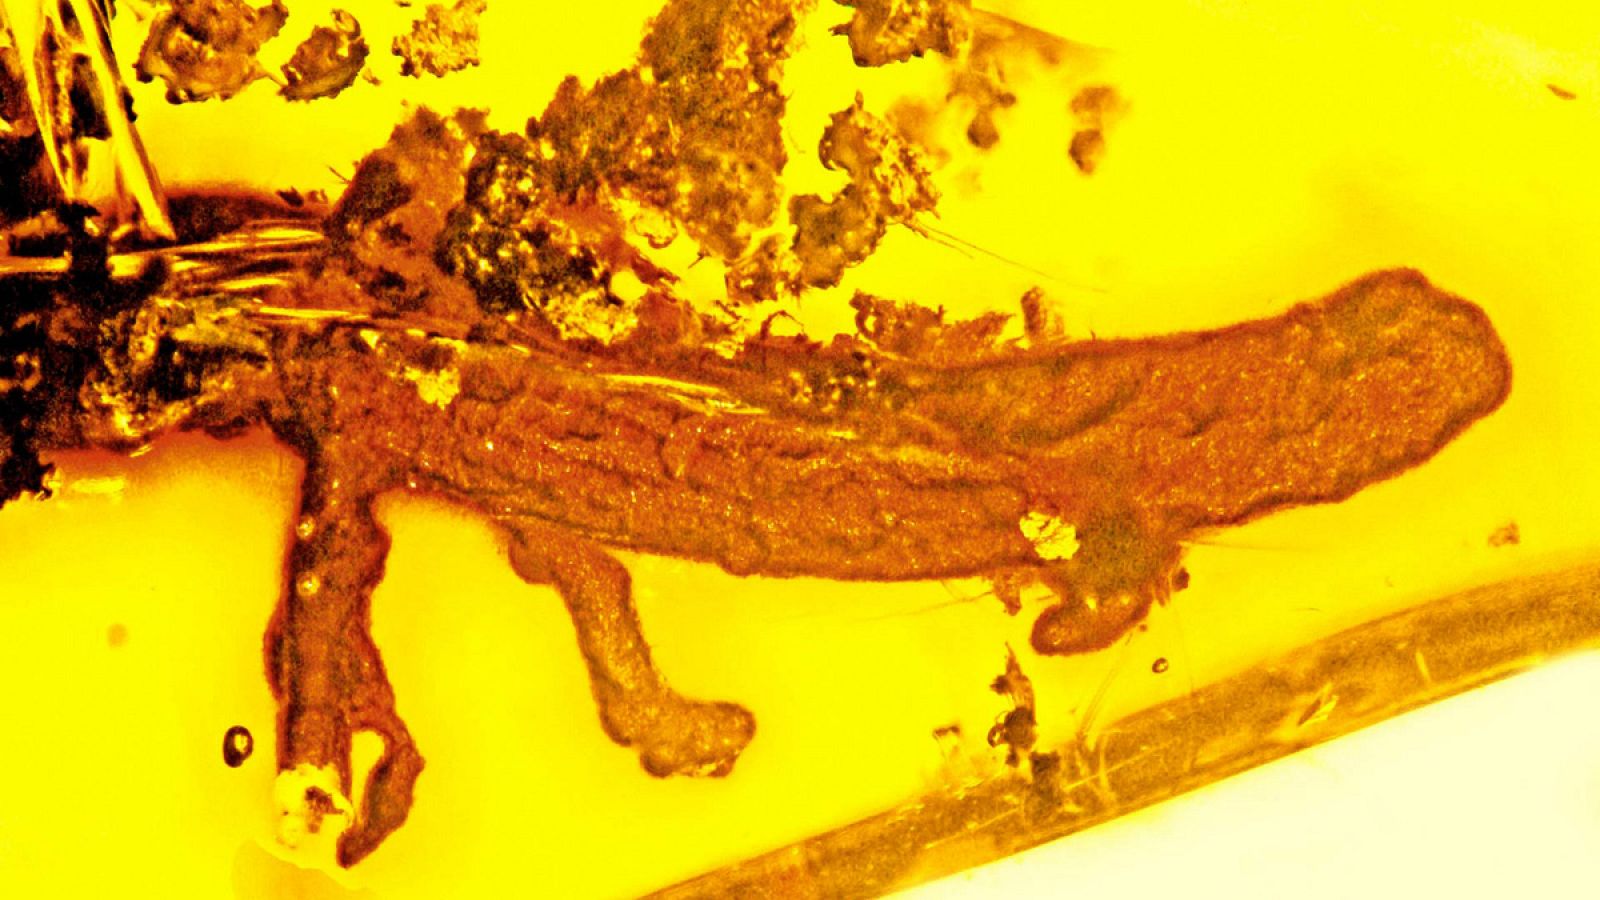 Este es el único fósil de salamandra preservado en ámbar que se conoce